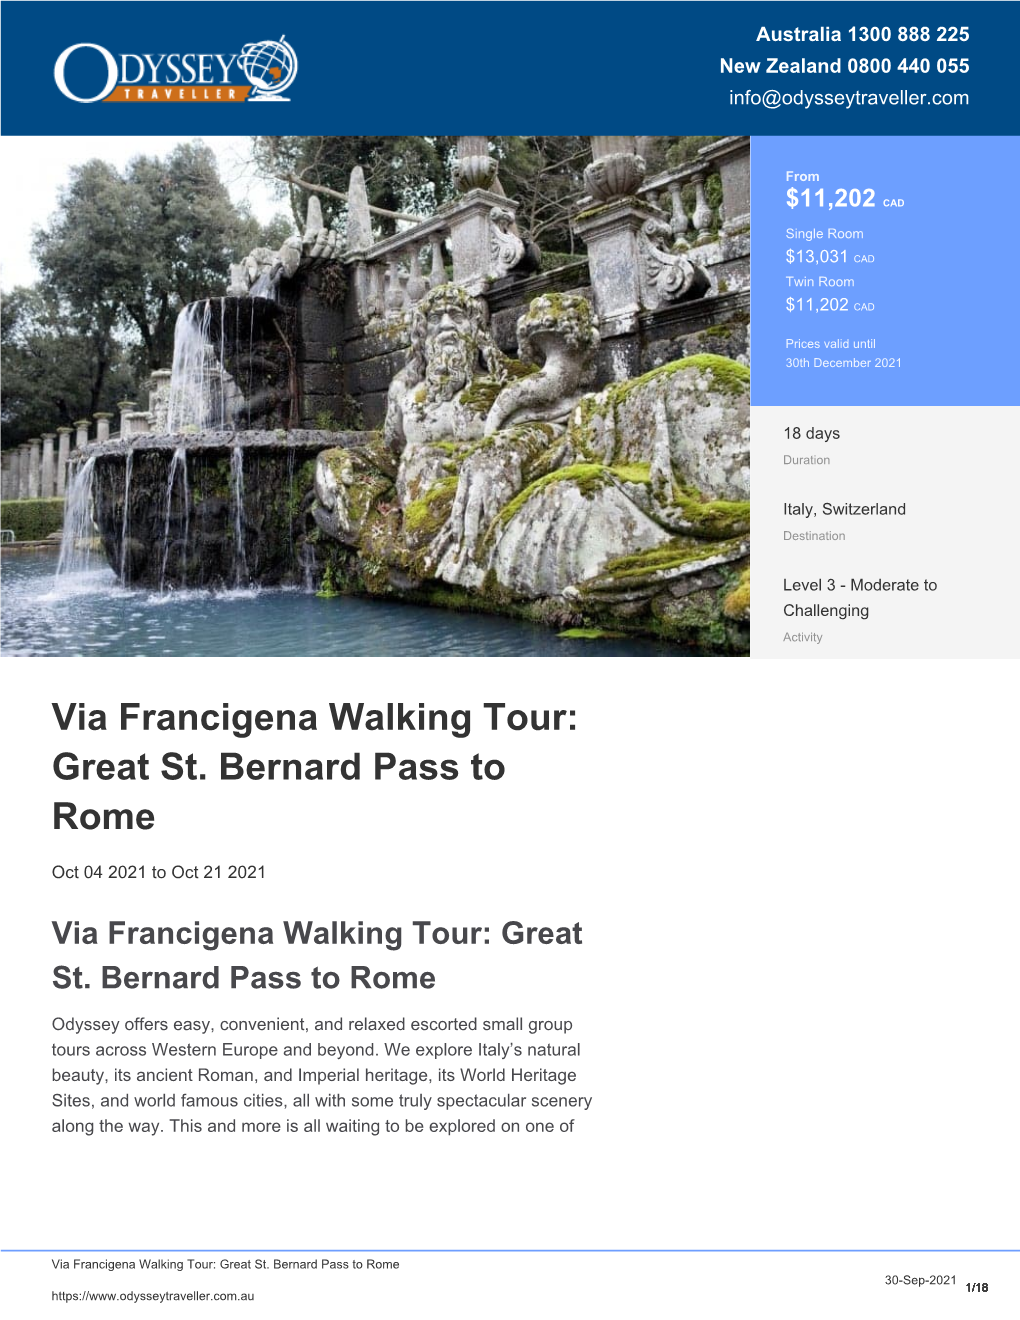 Via Francigena Pilgrim Walk | Package Tour for Seniors